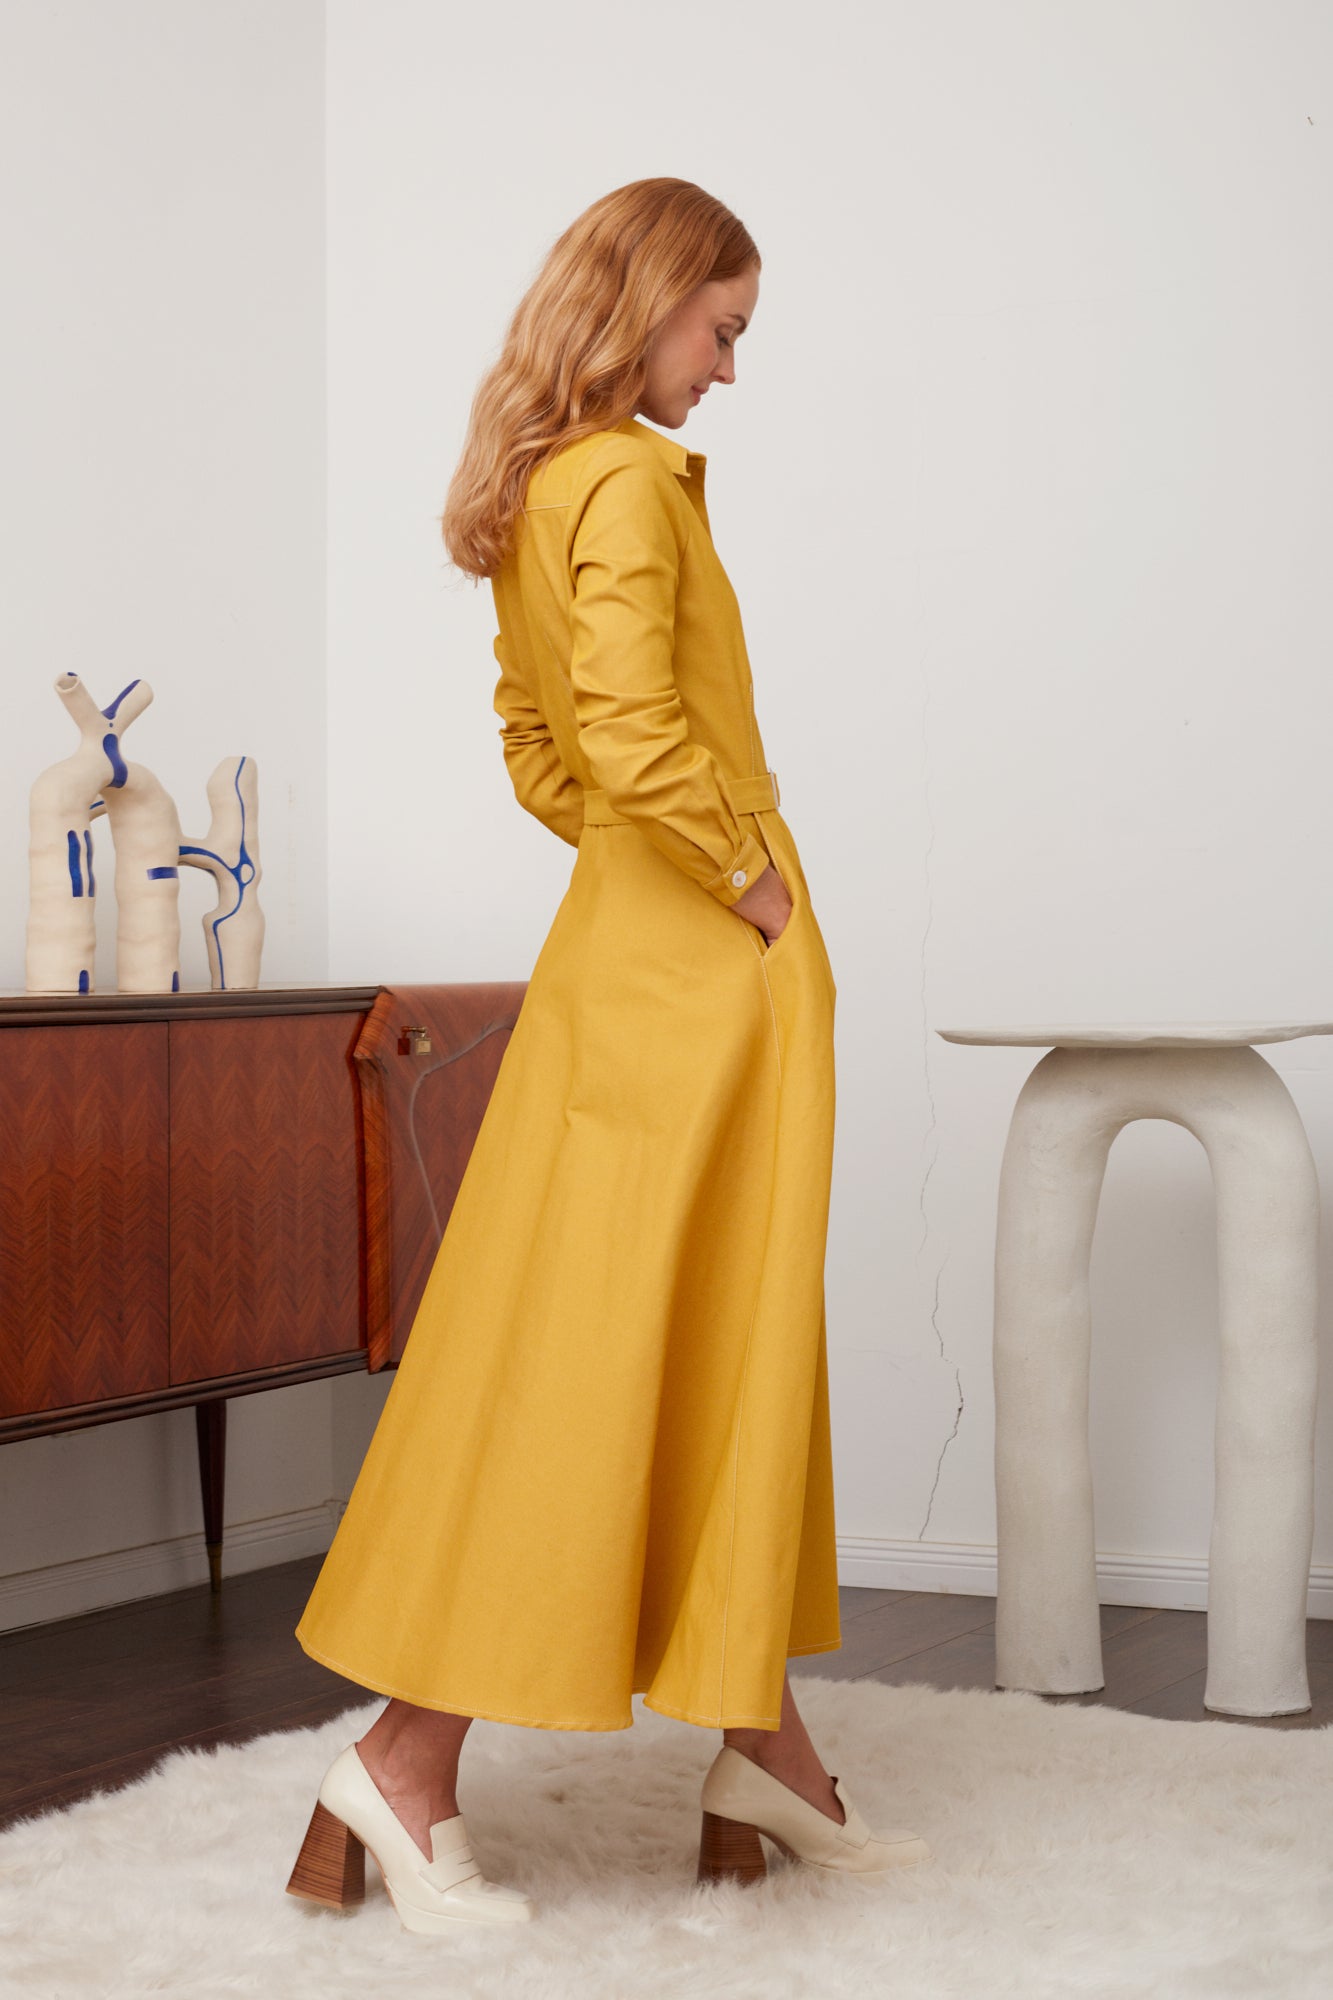 ESTI Classy Yellow Denim Midi Shirt Dress - Versatile and Elegant Fashion